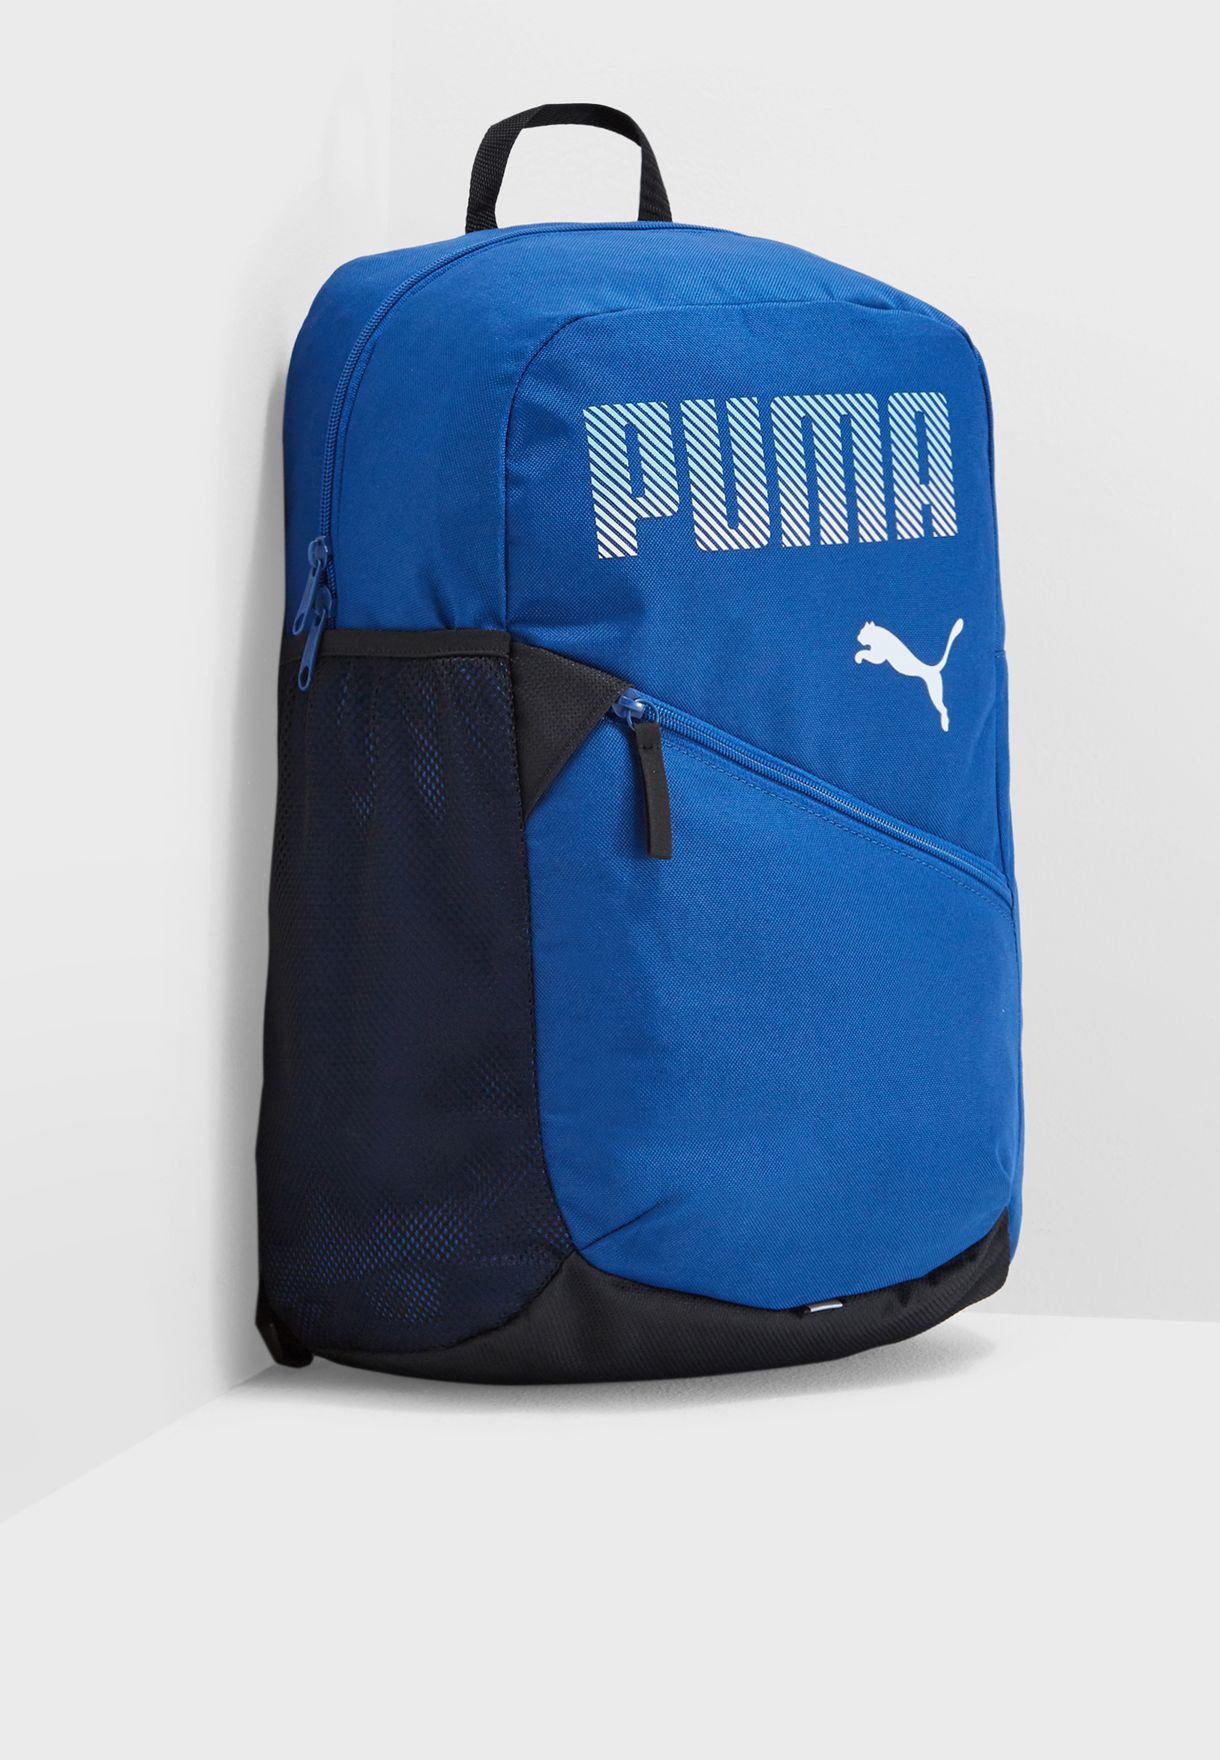 puma bags blue